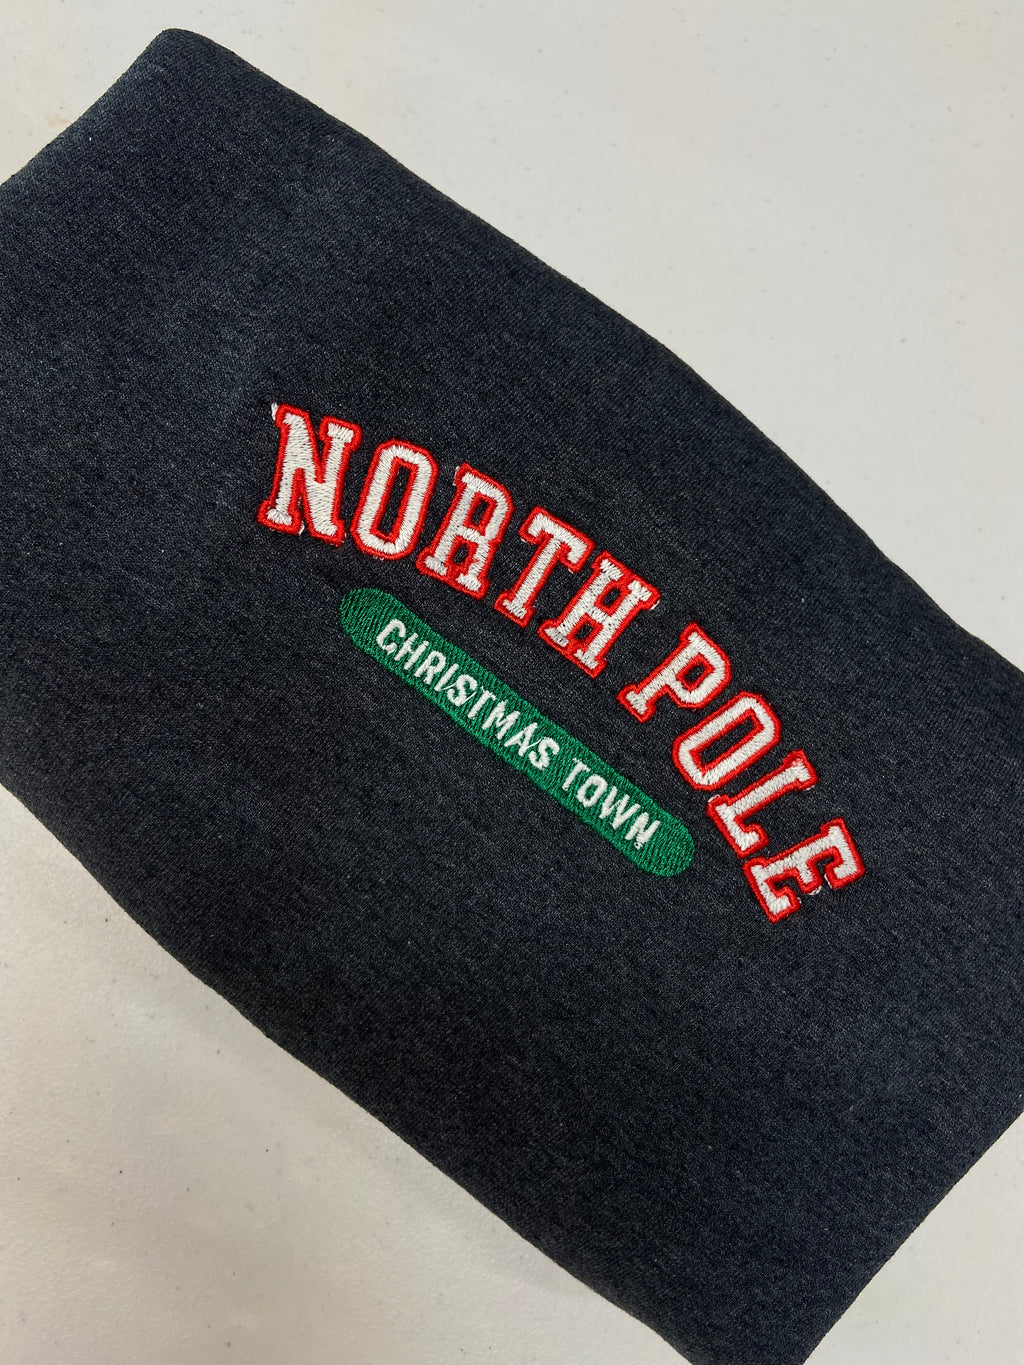 North Pole Christmas town crewneck